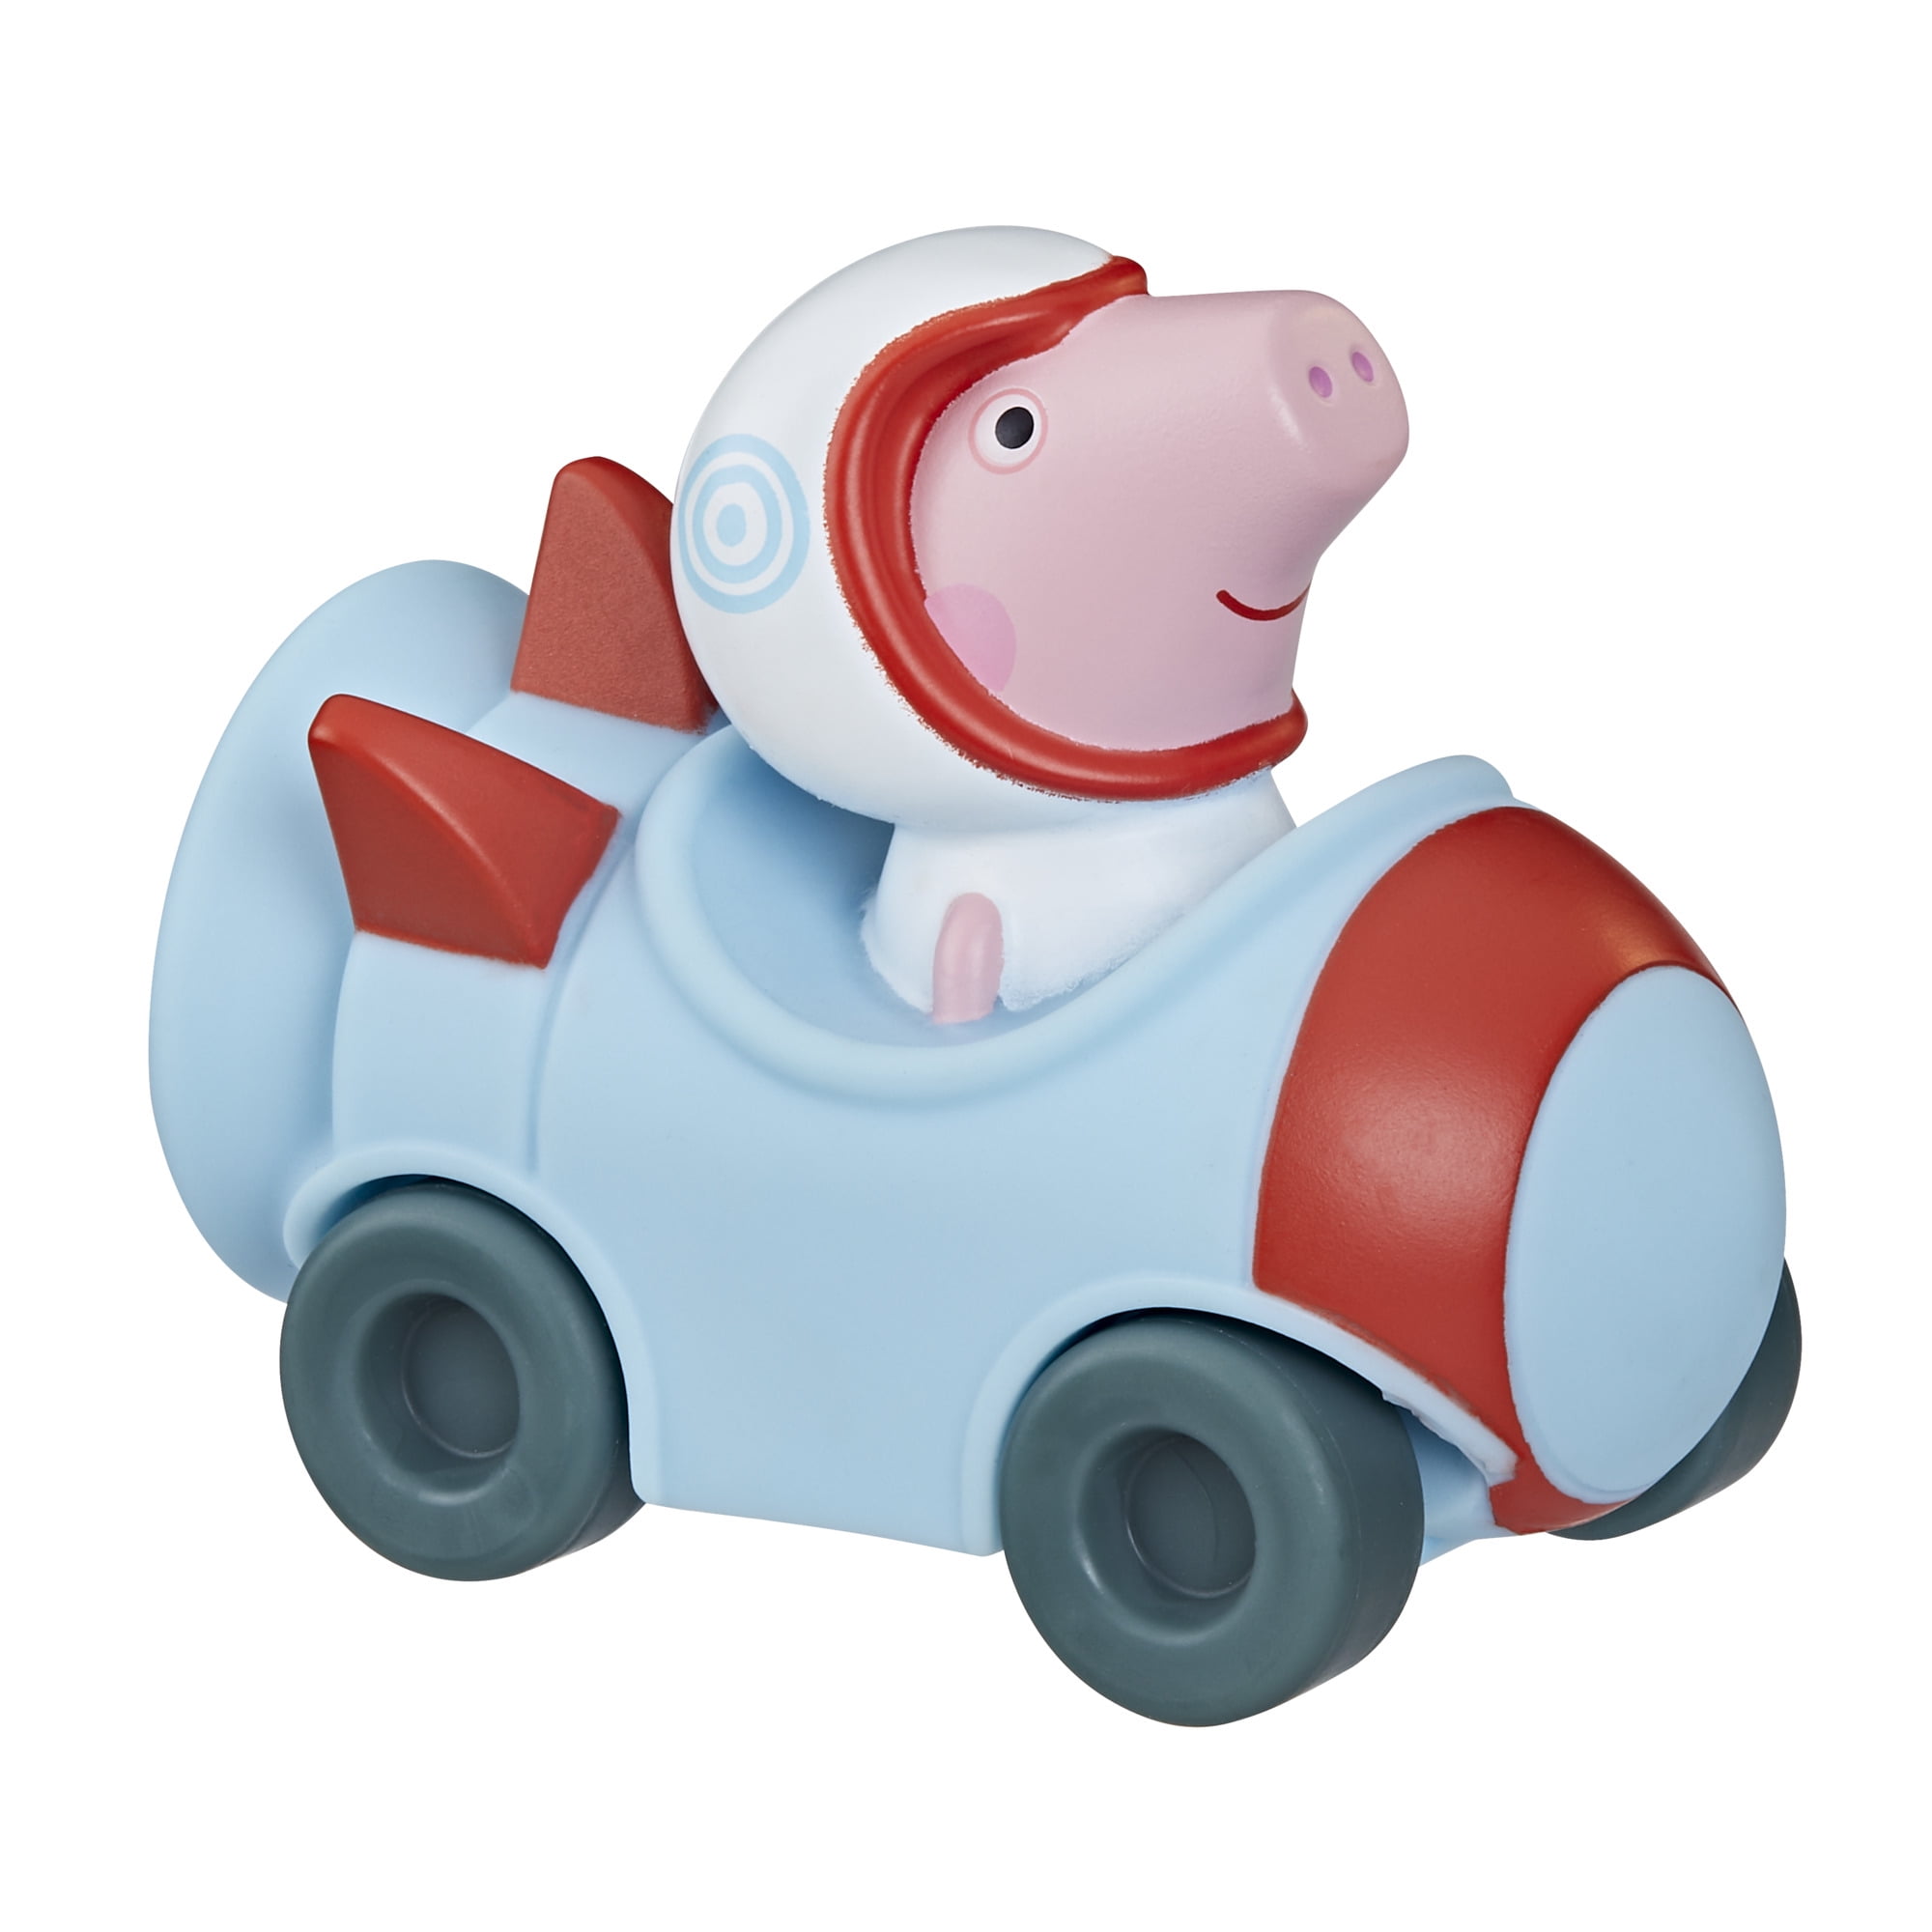 Peppa Pig Little Buggy Vehicle Playset, George Pig in Spaceship